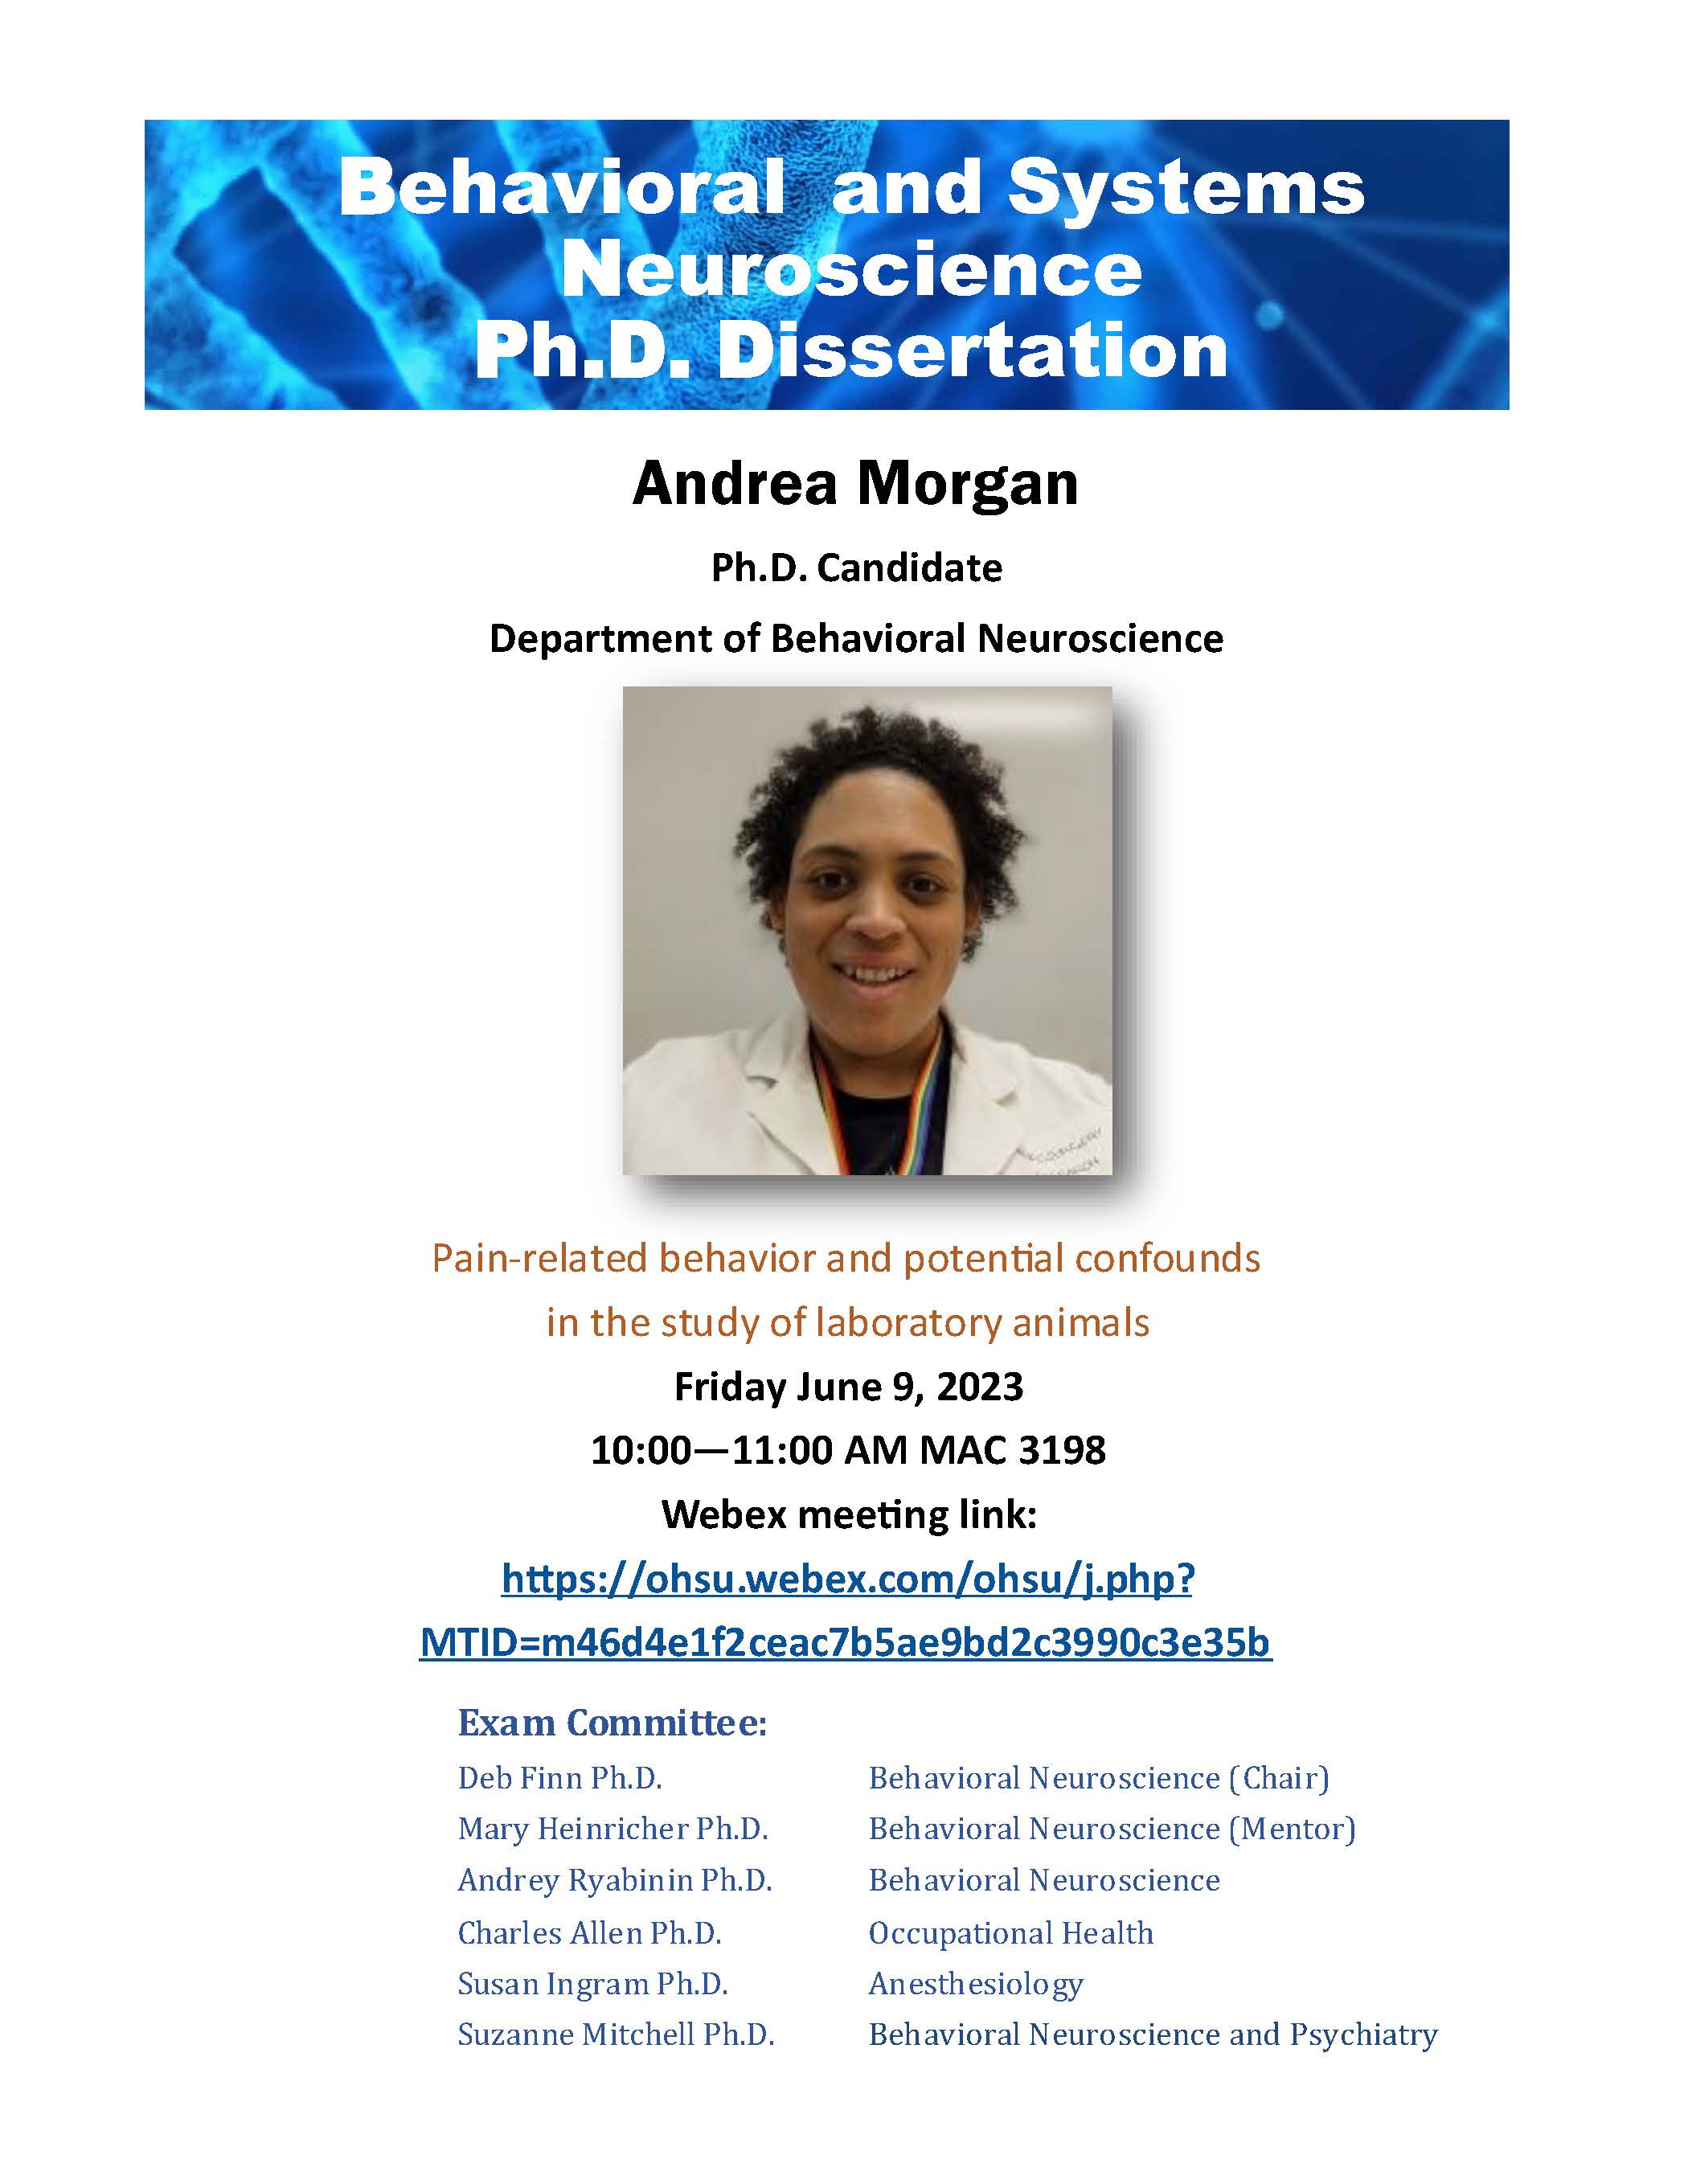 Andrew Morgan Ph.D. Dissertation Defense Flyer